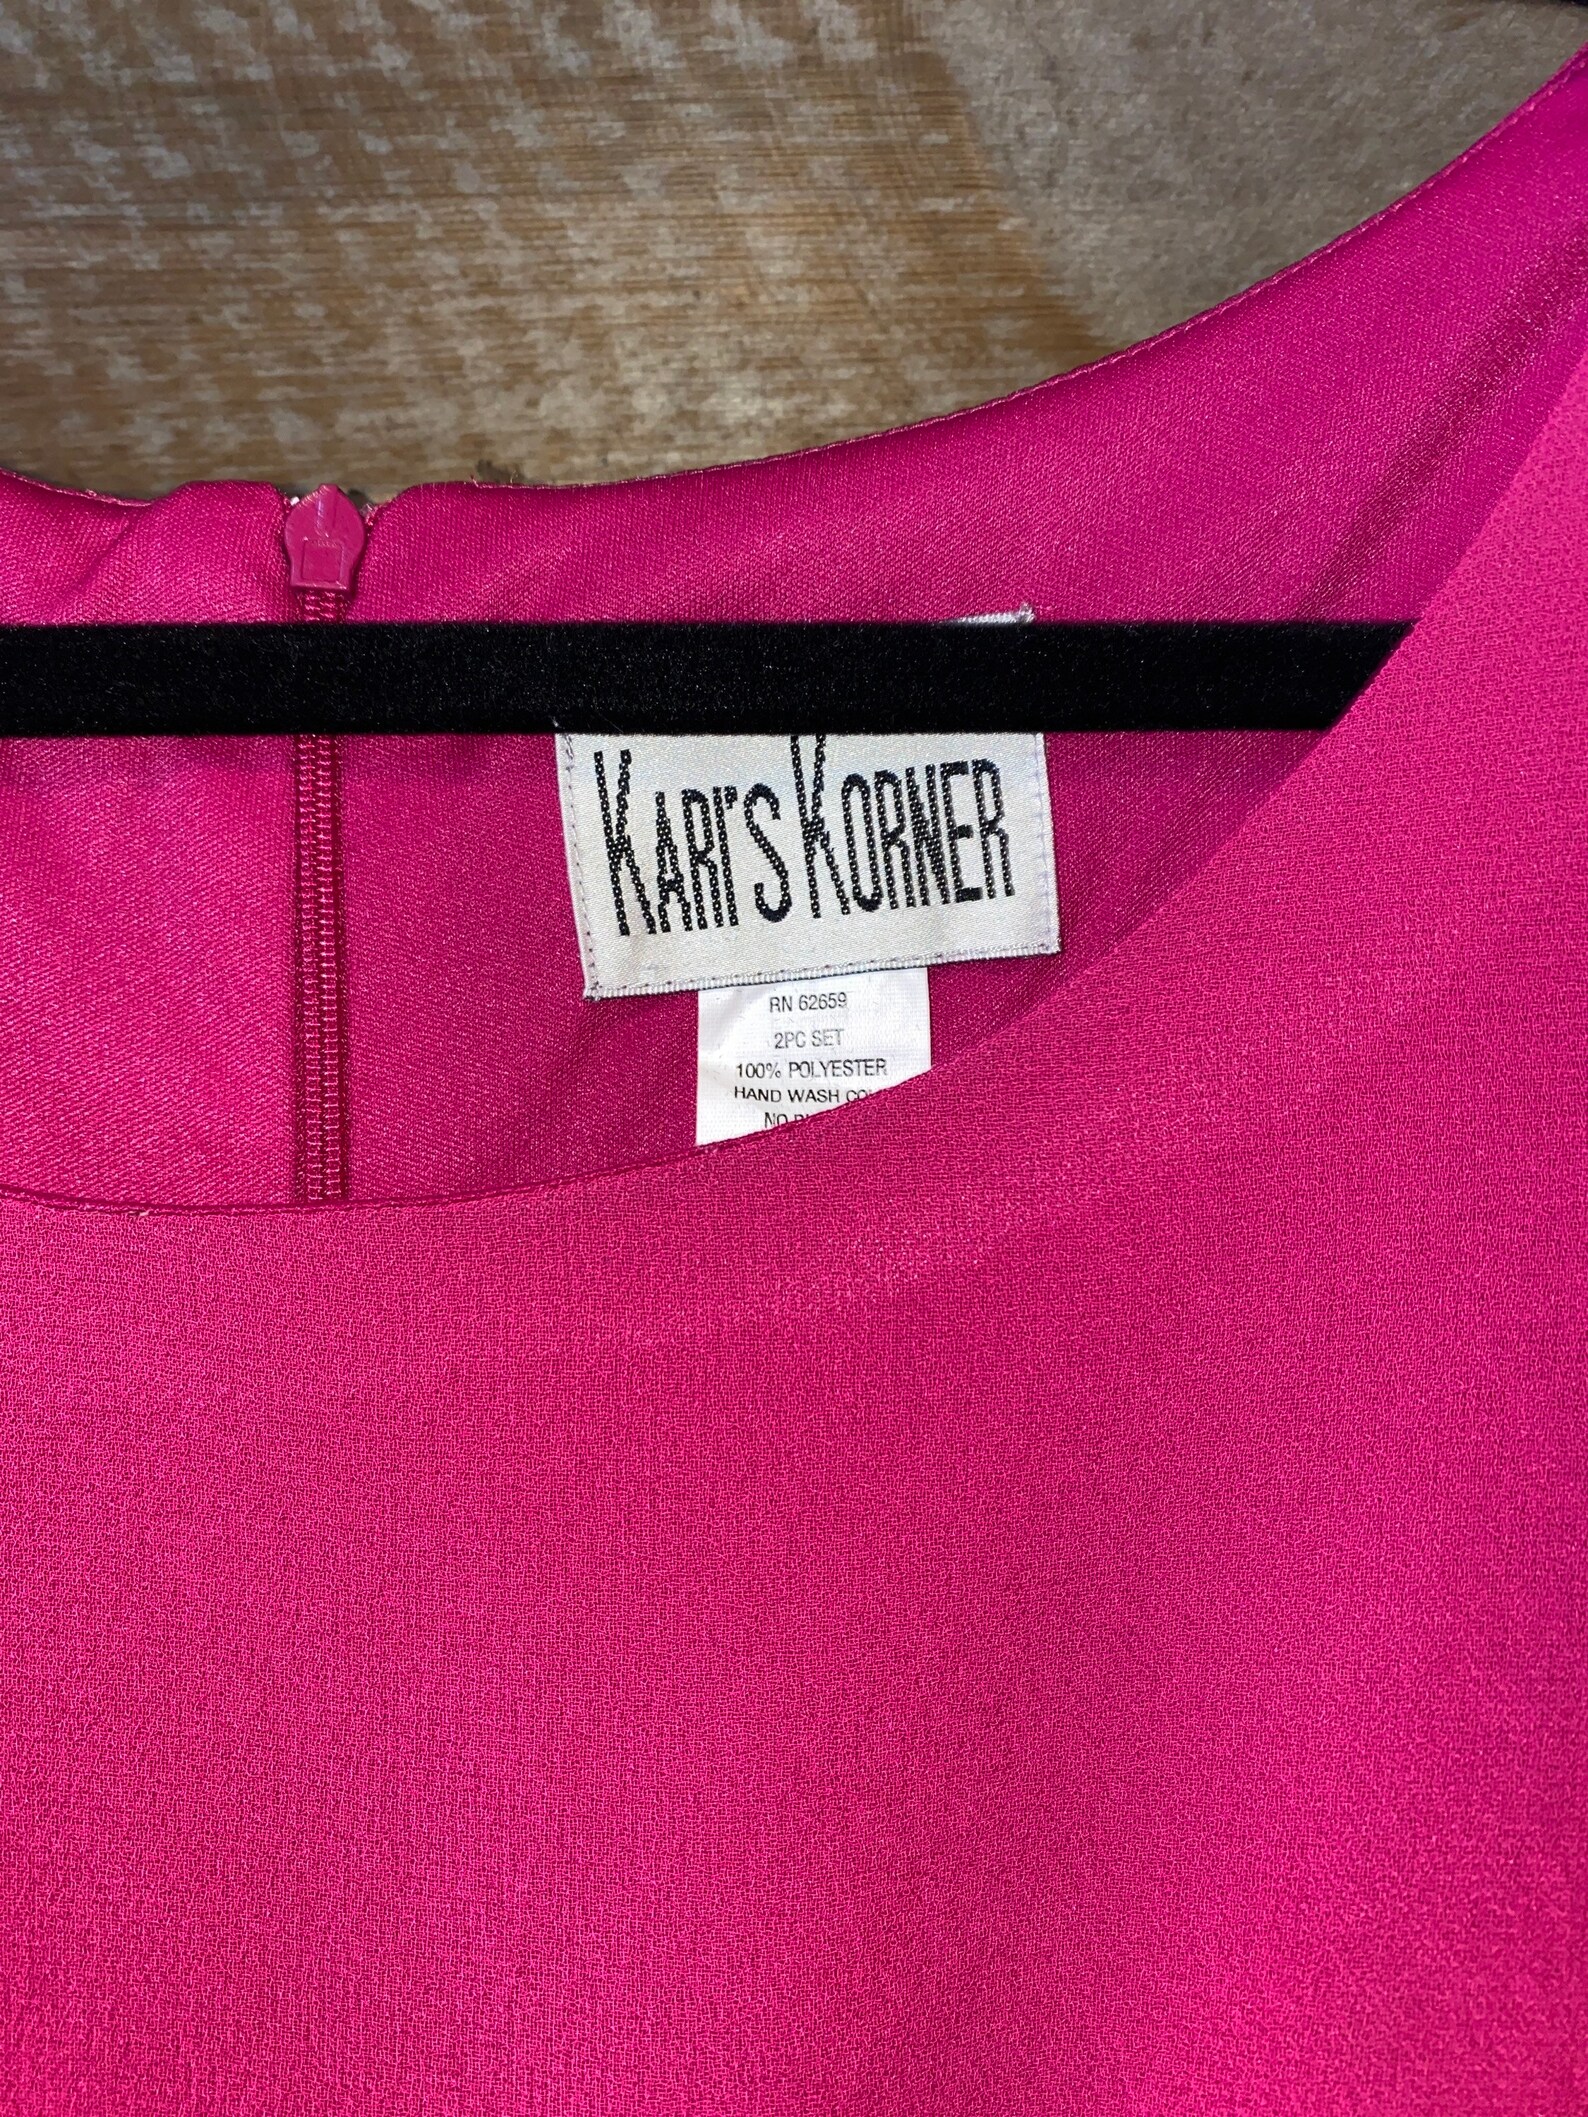 Karis Korner Dress 12 NEW Fusia Pink GORGEOUS | Etsy